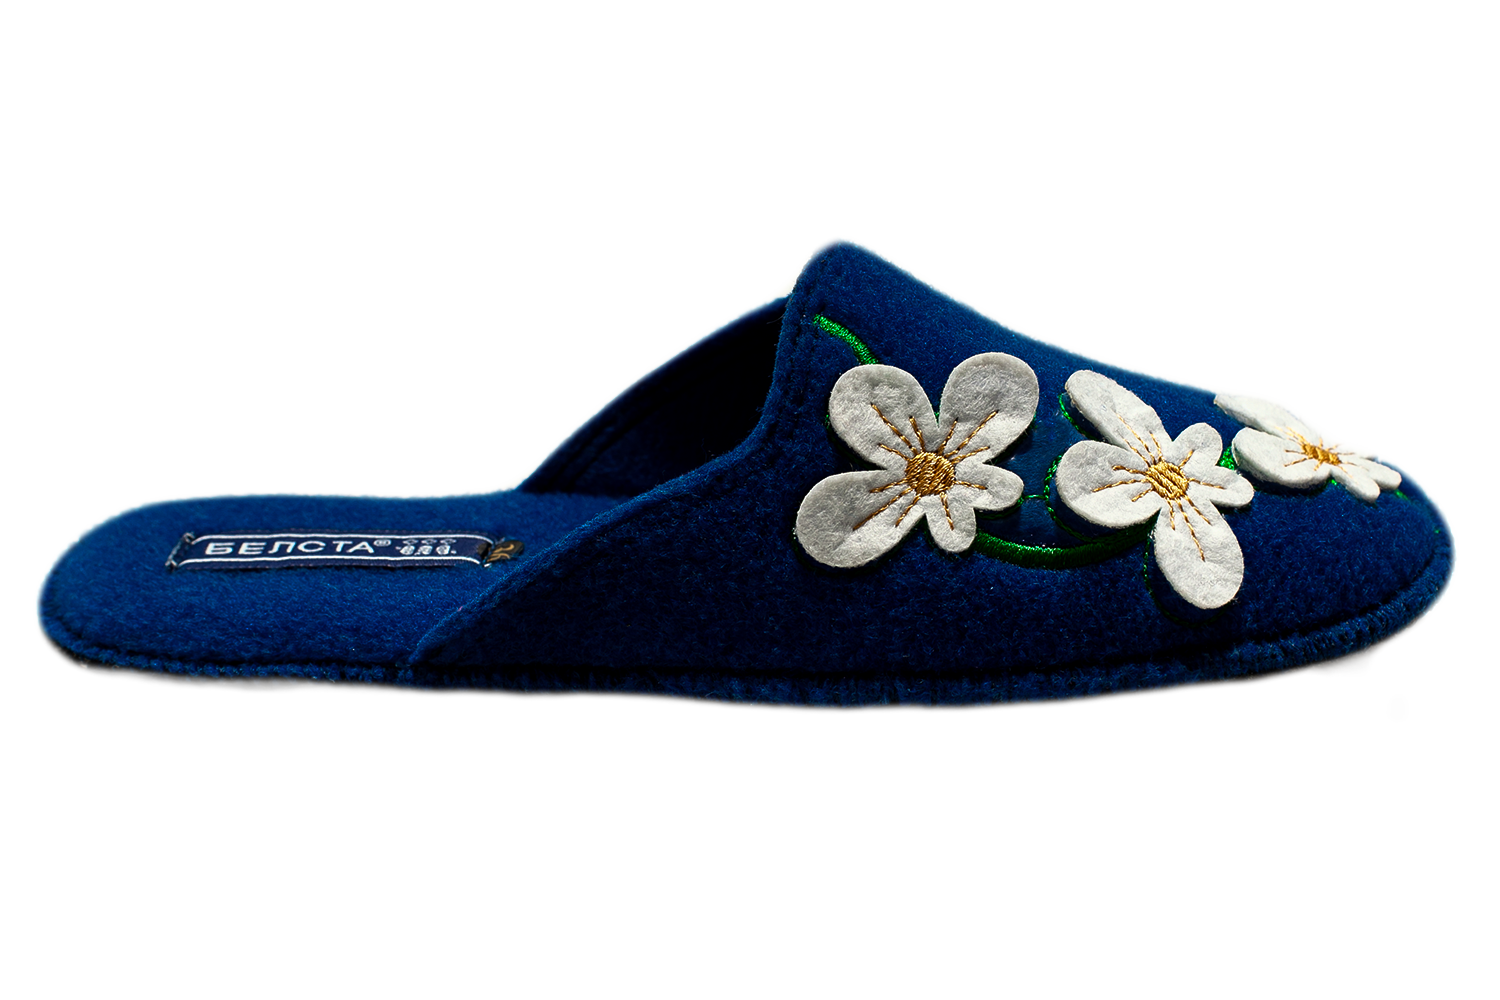 Женские закрытые тапочки БЕЛСТА из синего войлока украшены аппликацией цветочков и вышивкой - 3